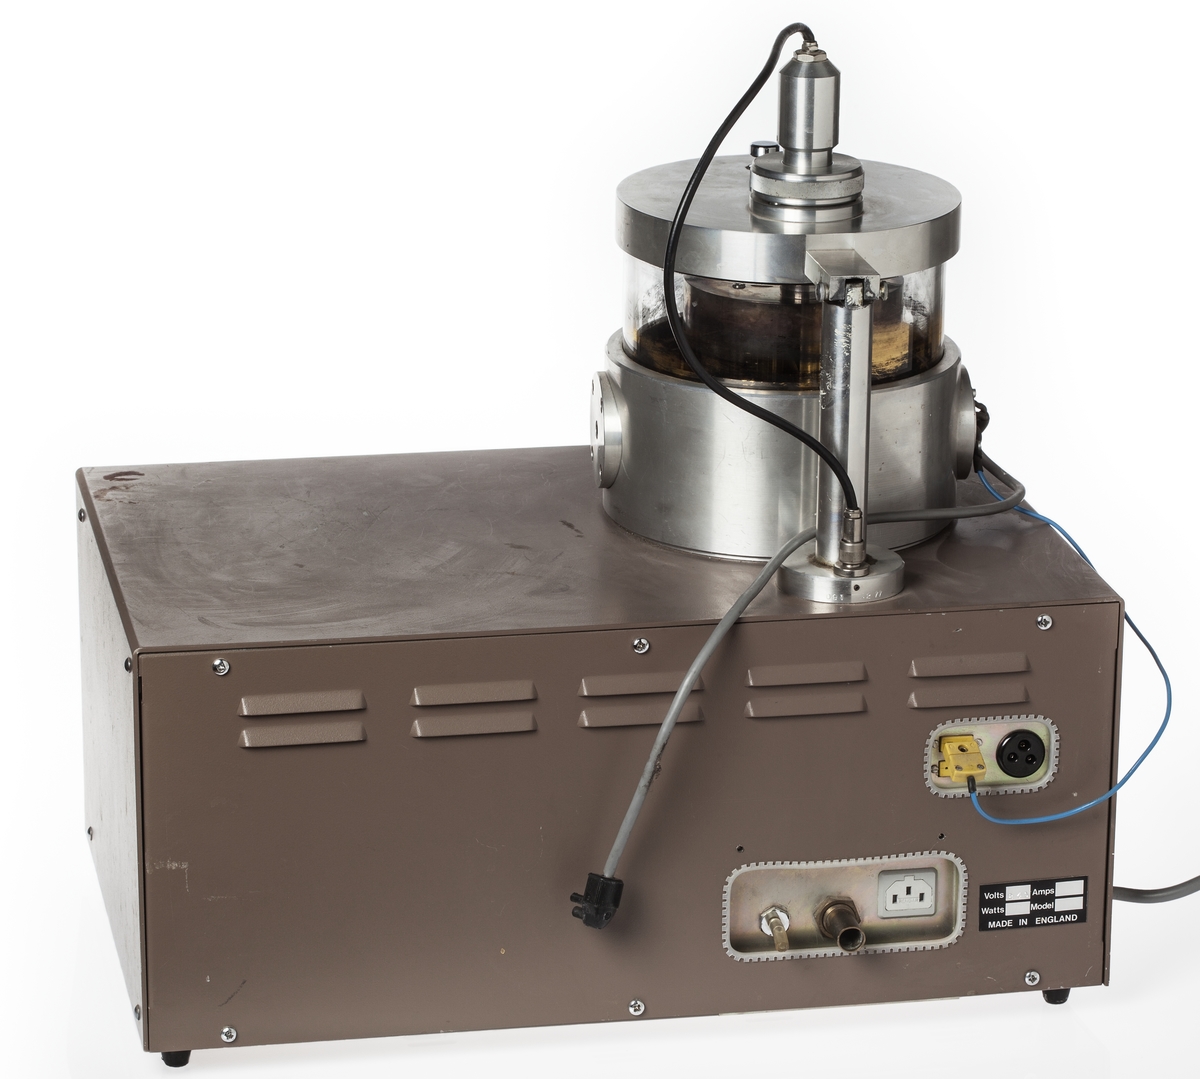 Maskin för beläggning av preparat med guld inför undersökning i svepelektronmikroskop. Typbeteckning Sem coating unit E 5100, tillverkare Polaron Equipment Ltd.